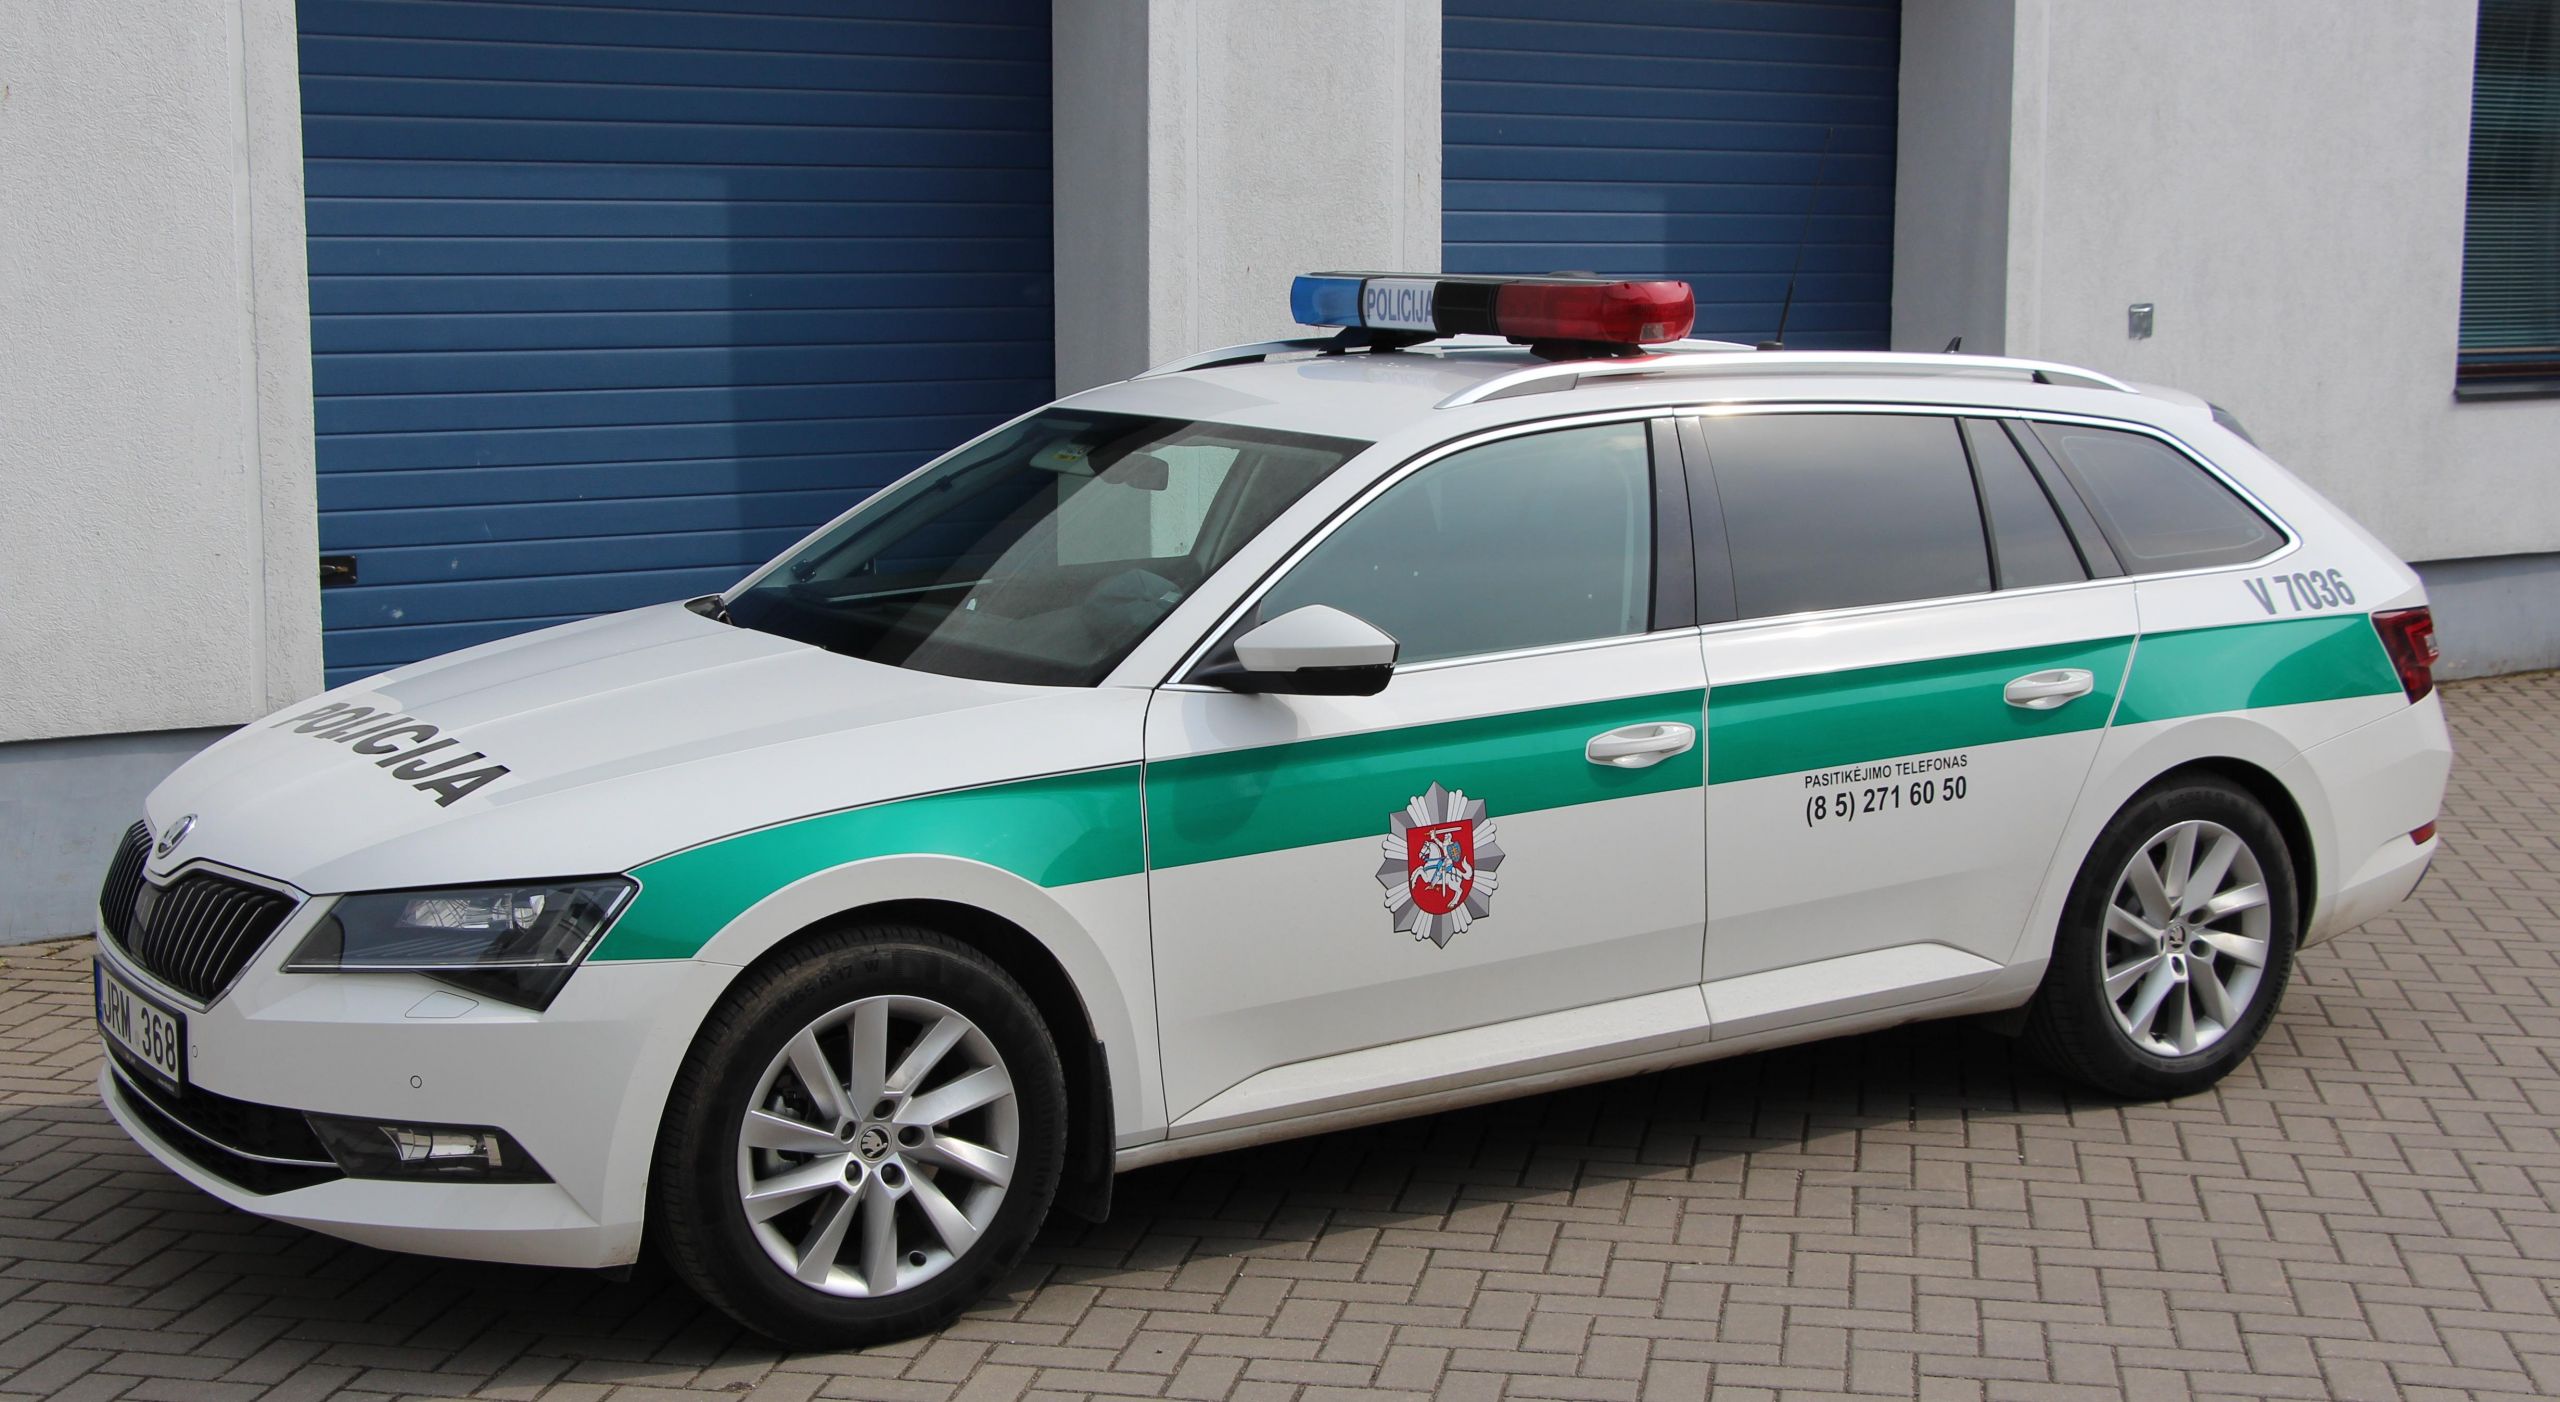 Policininkai patruliuos nauju „Škoda Superb“ /